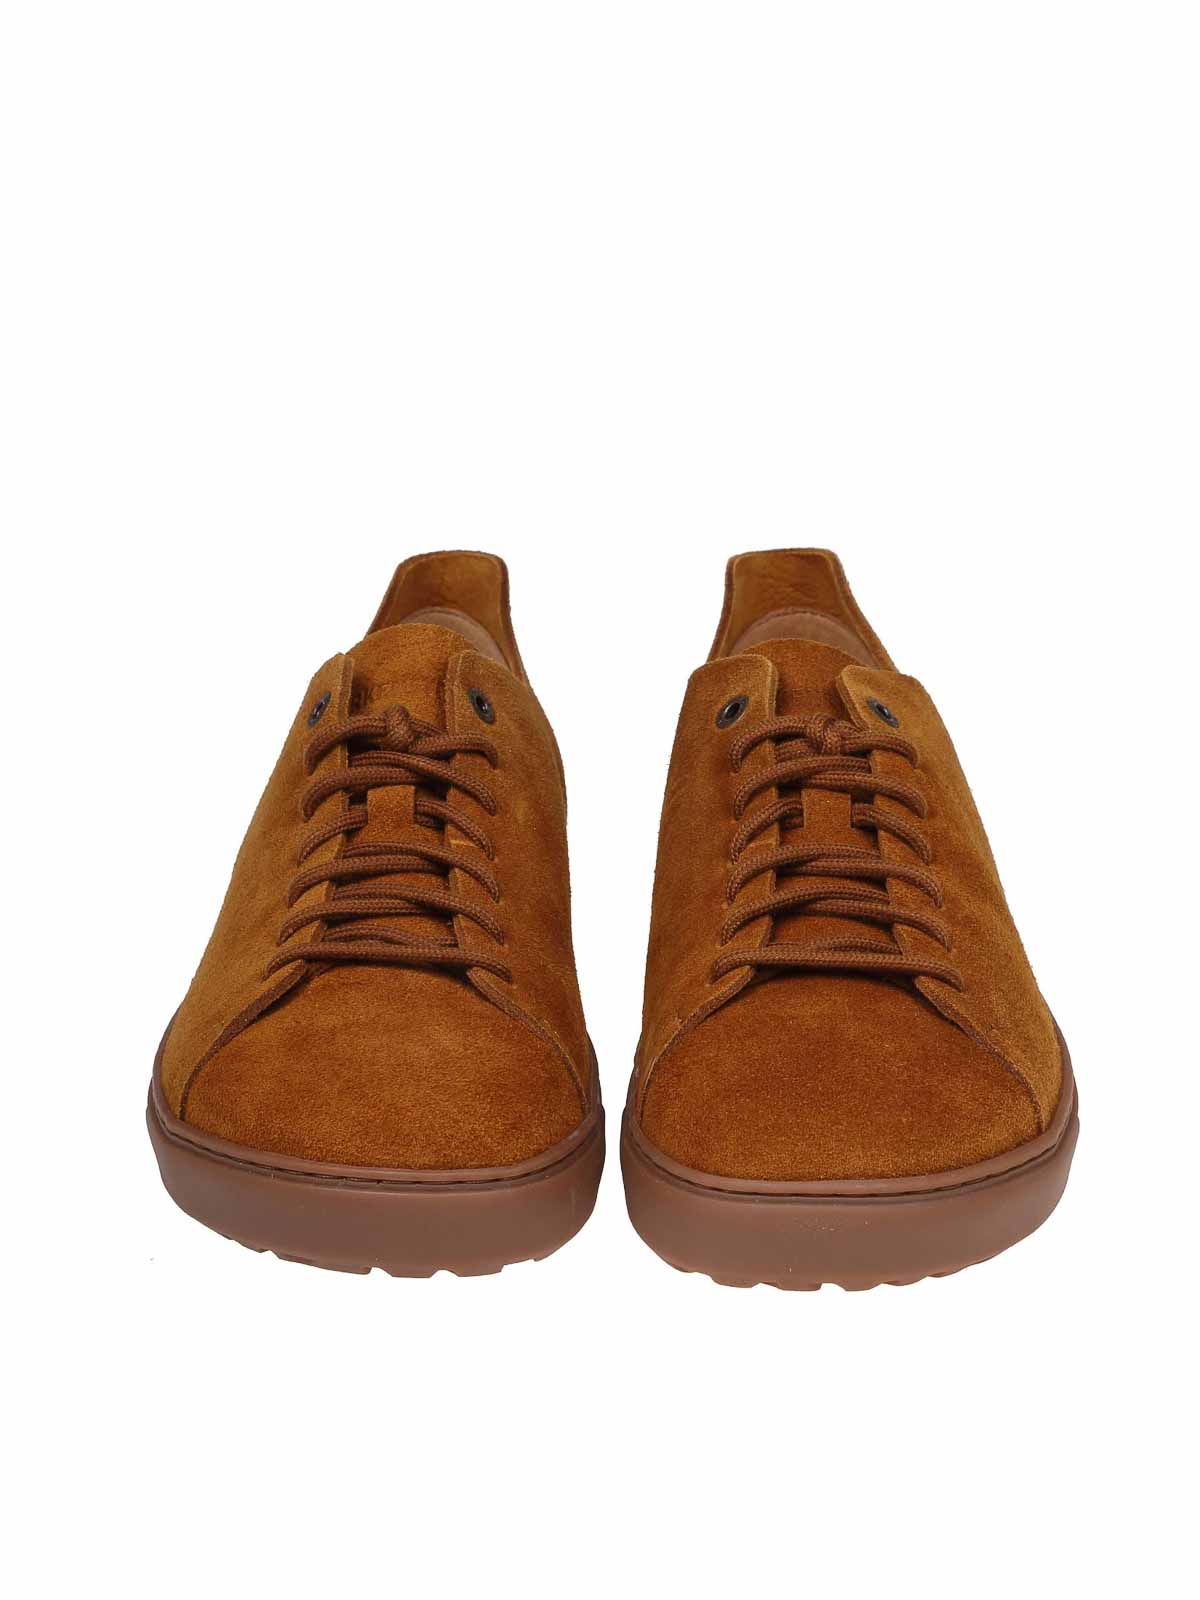 Shop Birkenstock Low Suede Sneakers In Light Brown